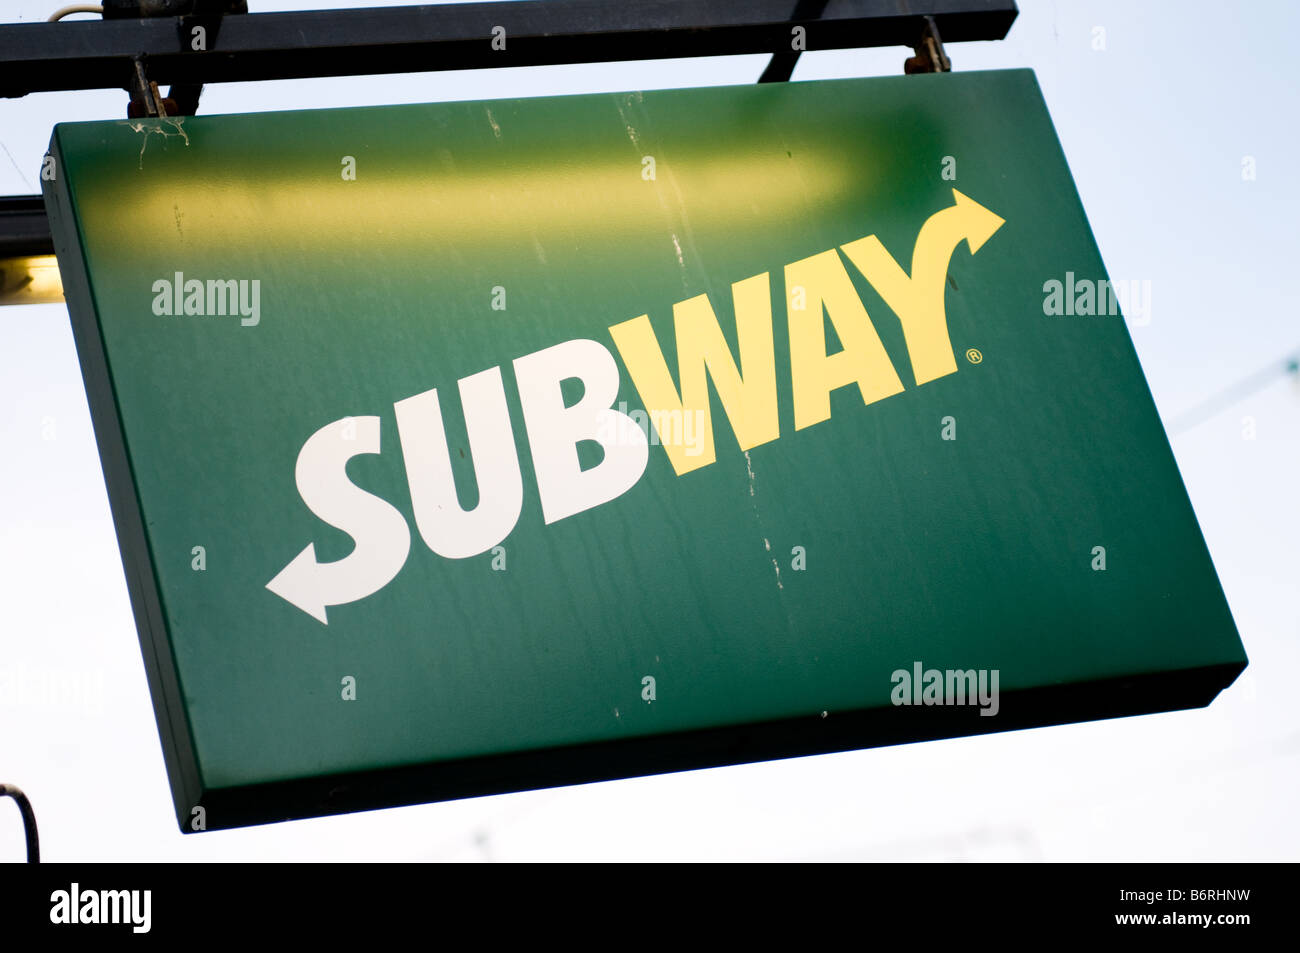 Bar sandwich Subway sign Banque D'Images